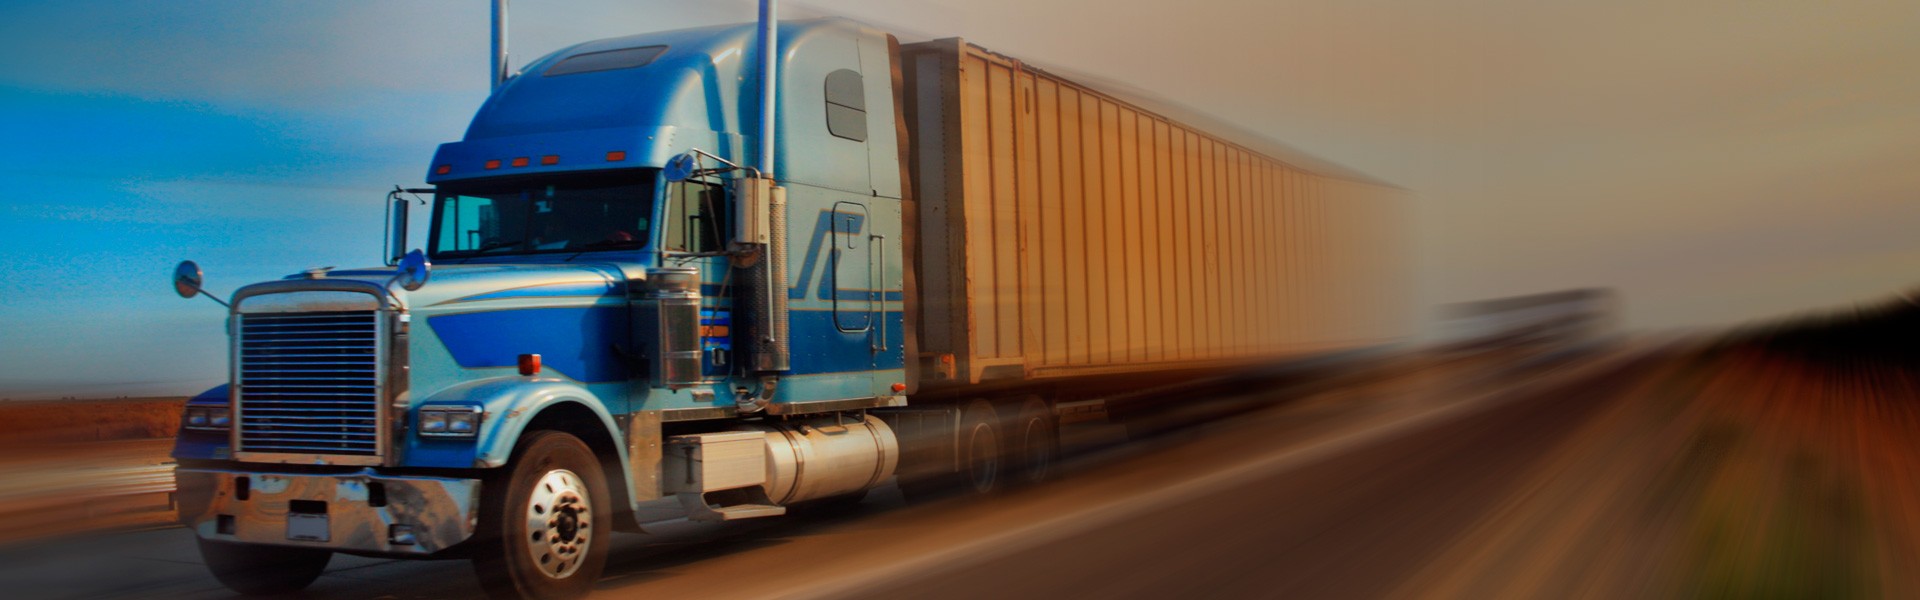 Soluciones logísticas en transporte terrestre: operación tránsito multimodal OTM, carga nacional, exportación, refrigerada, consolidada, etc.